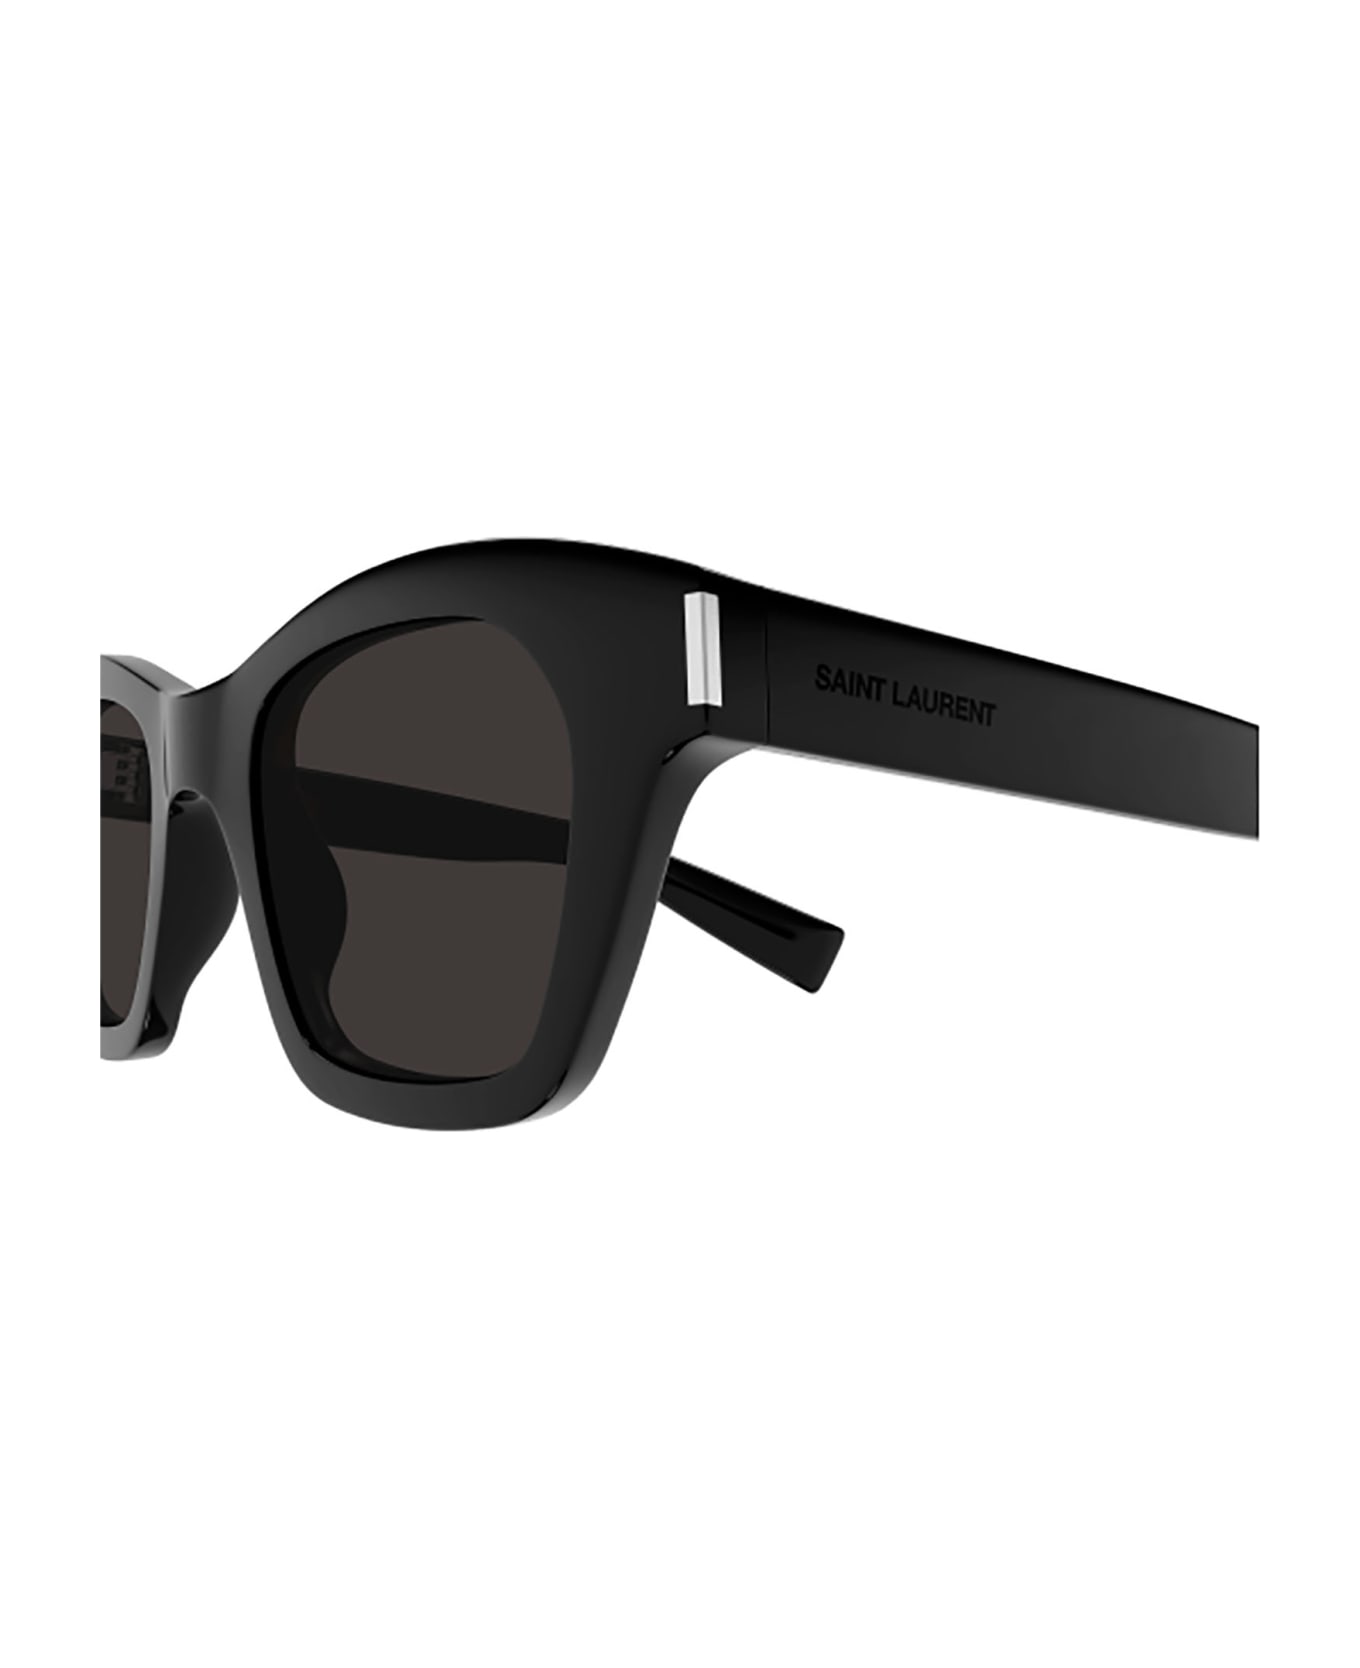 Saint Laurent Eyewear Sl 592 Sunglasses - 001 black black black サングラス